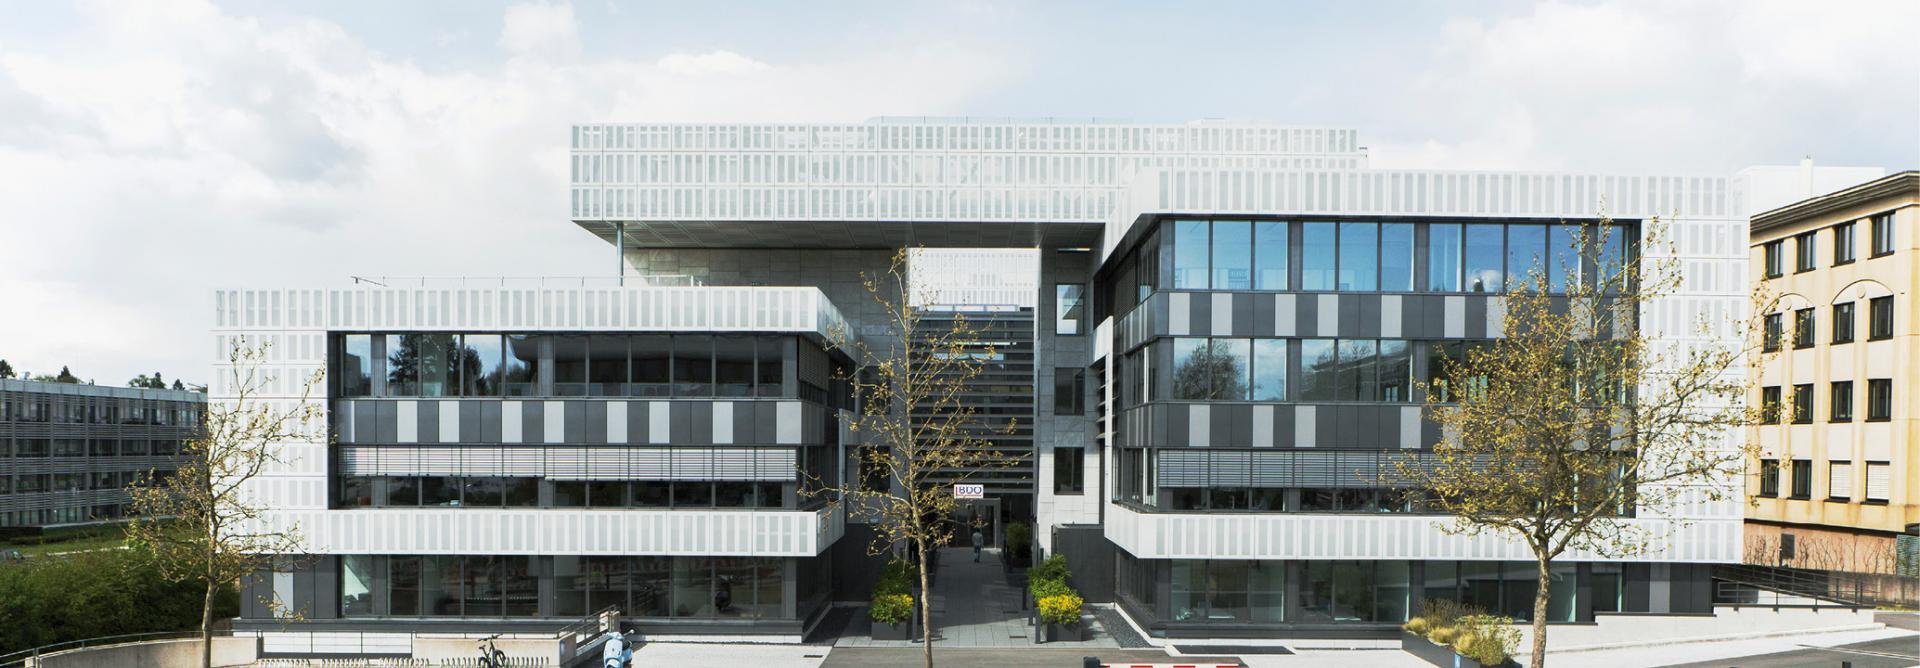 6 Bâtiment administratif à Luxembourg, Cloche d’Or pour Atenor Group Luxembourg s.a.. Bureaux d’études: Simone & Christiansen s.a., Felgen & associés engineering.